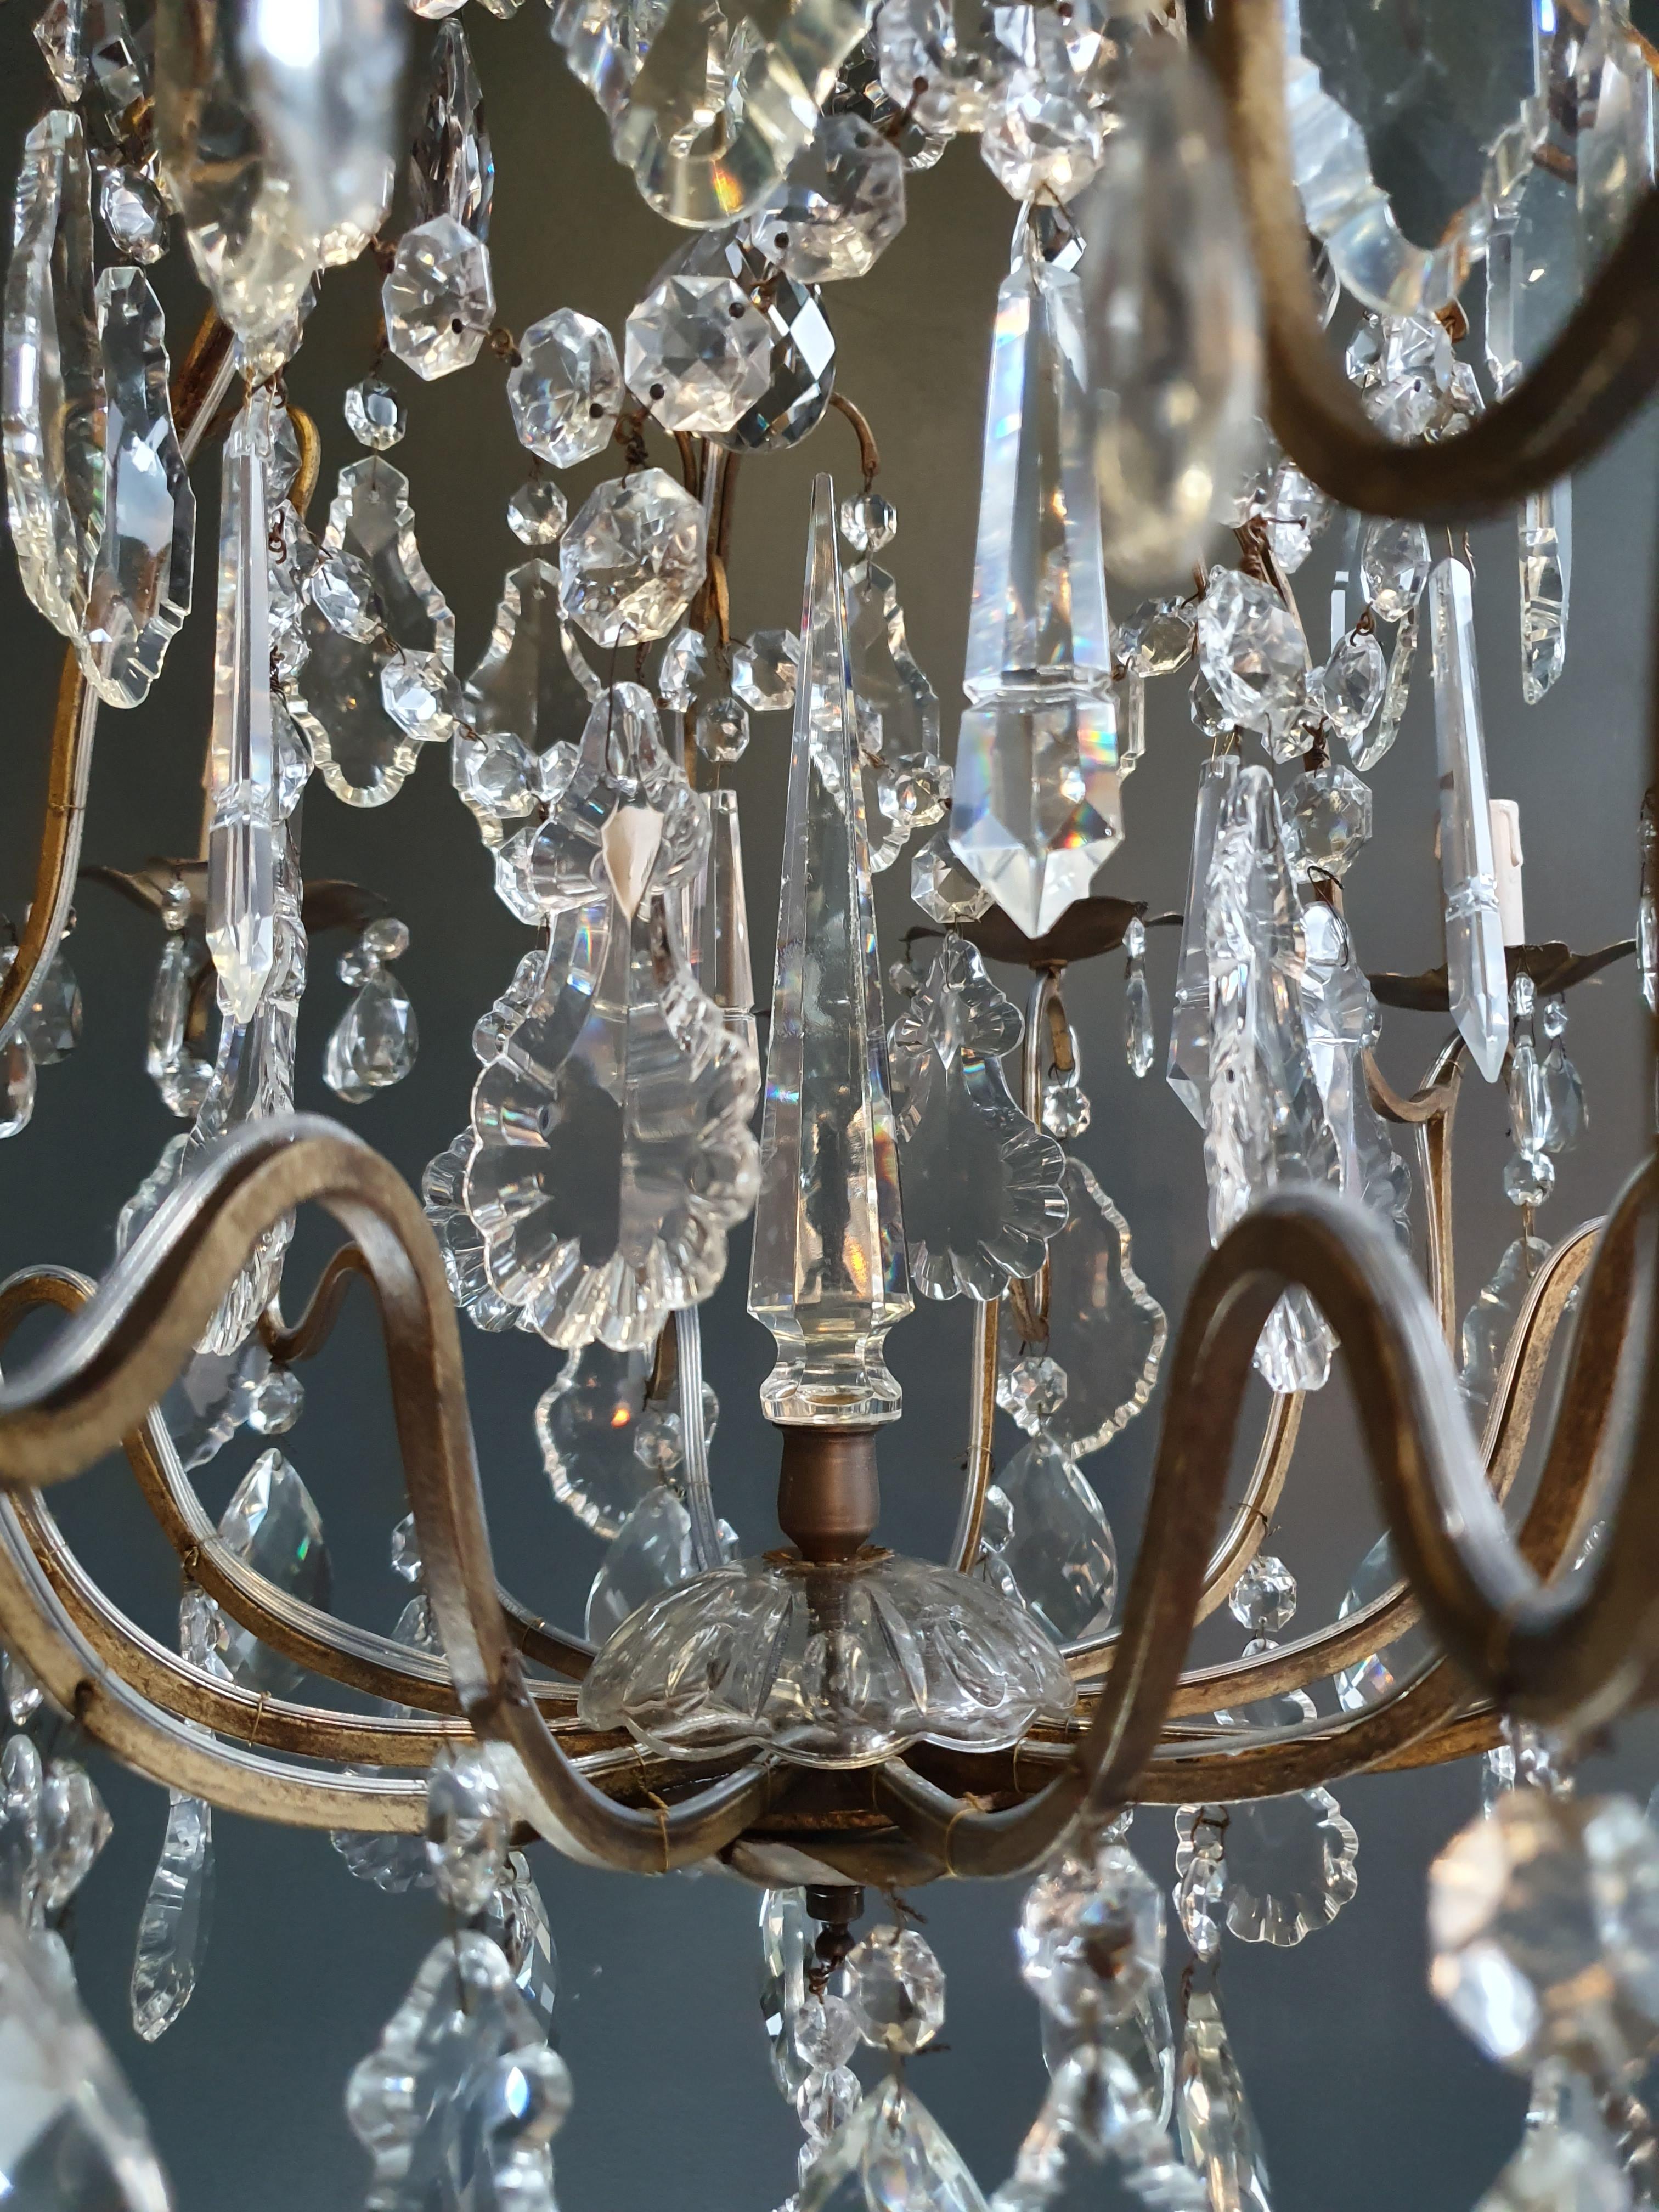 Mid-20th Century Fine Brass Crystal Chandelier Antique Ceiling Lamp Lustre Art Nouveau Lamp